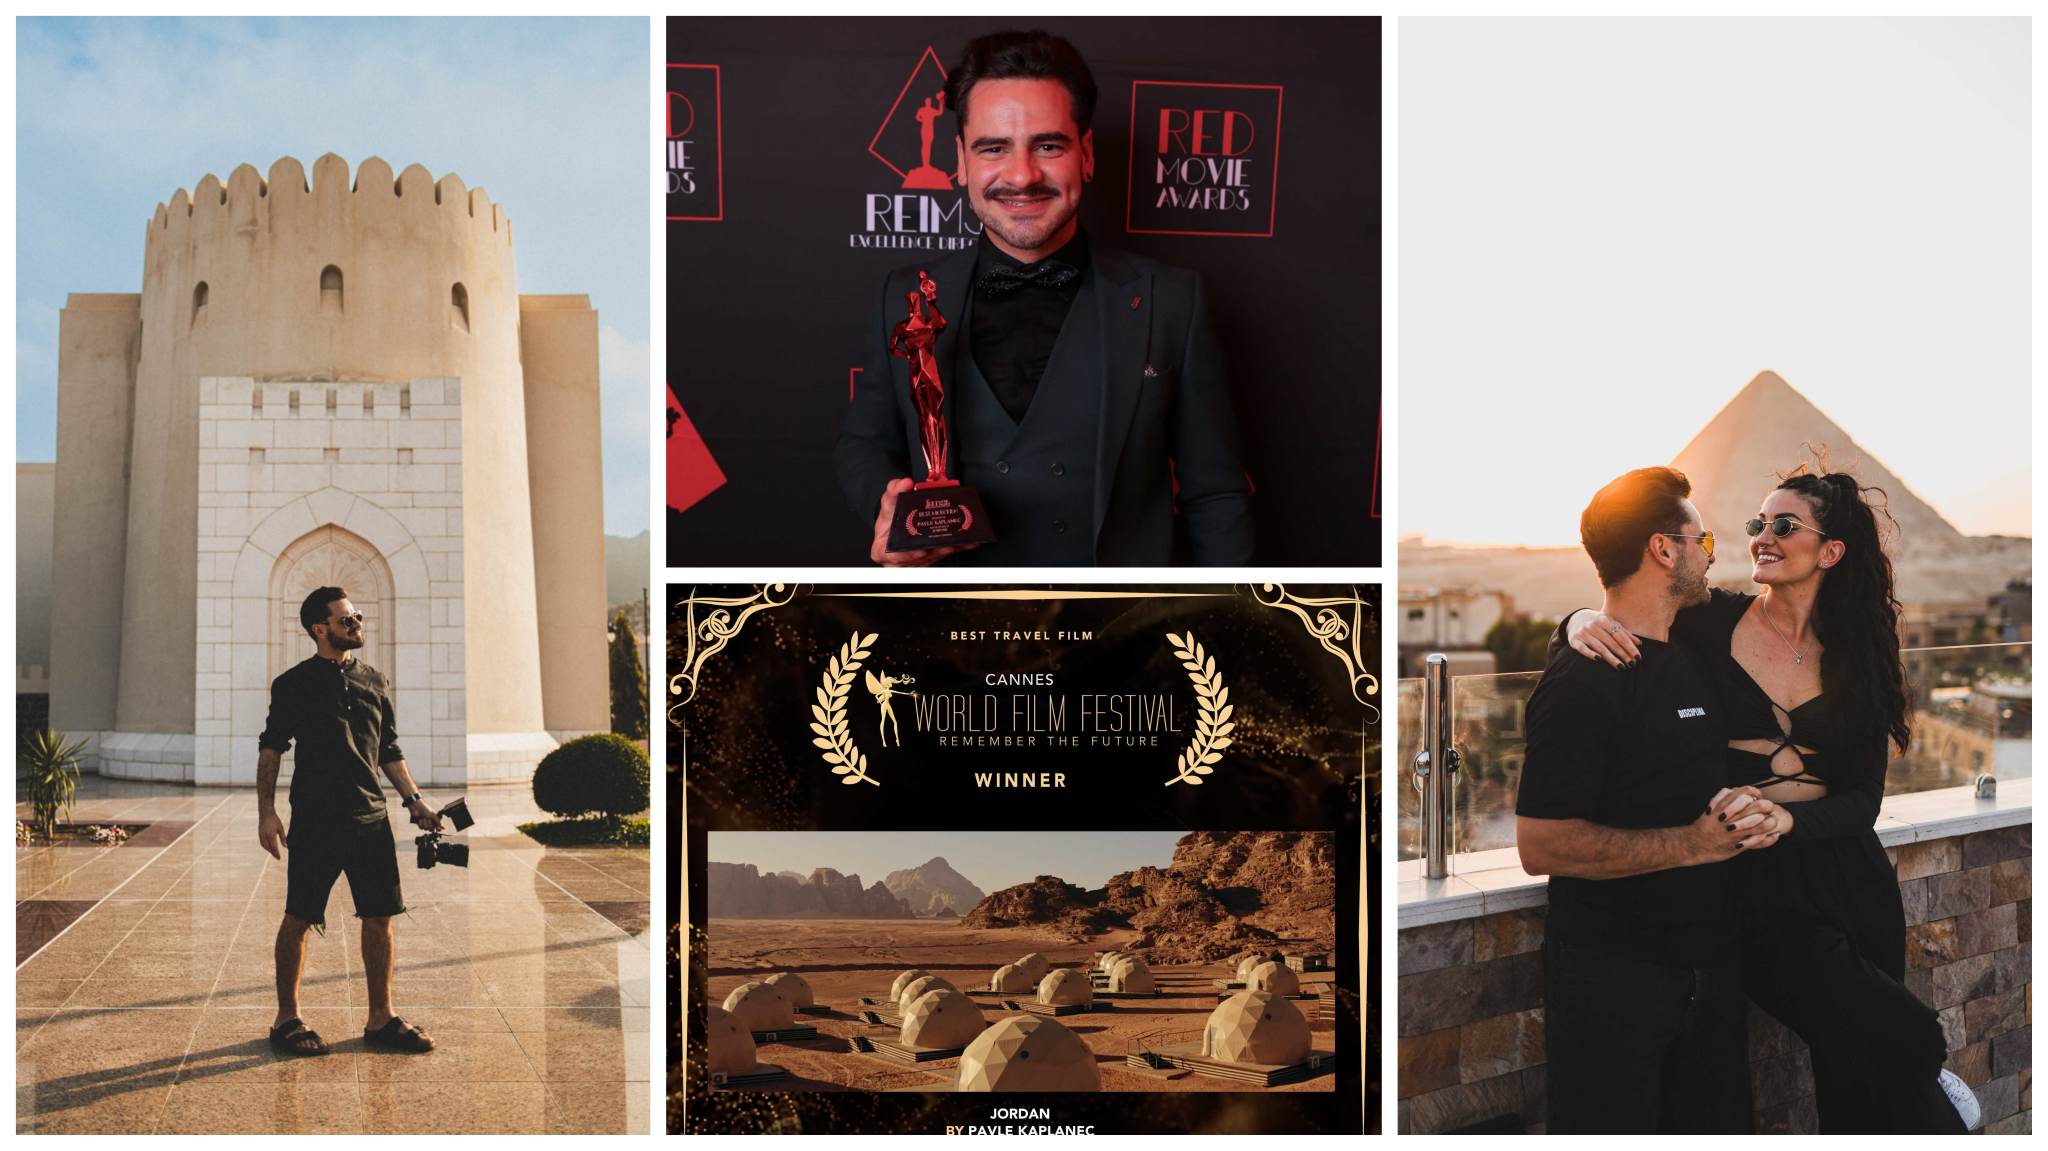 Pavle Kaplanec: "Ponosan sam na nagradu za film "Jordan" koji su ocenjivali svetski priznati glumci!"